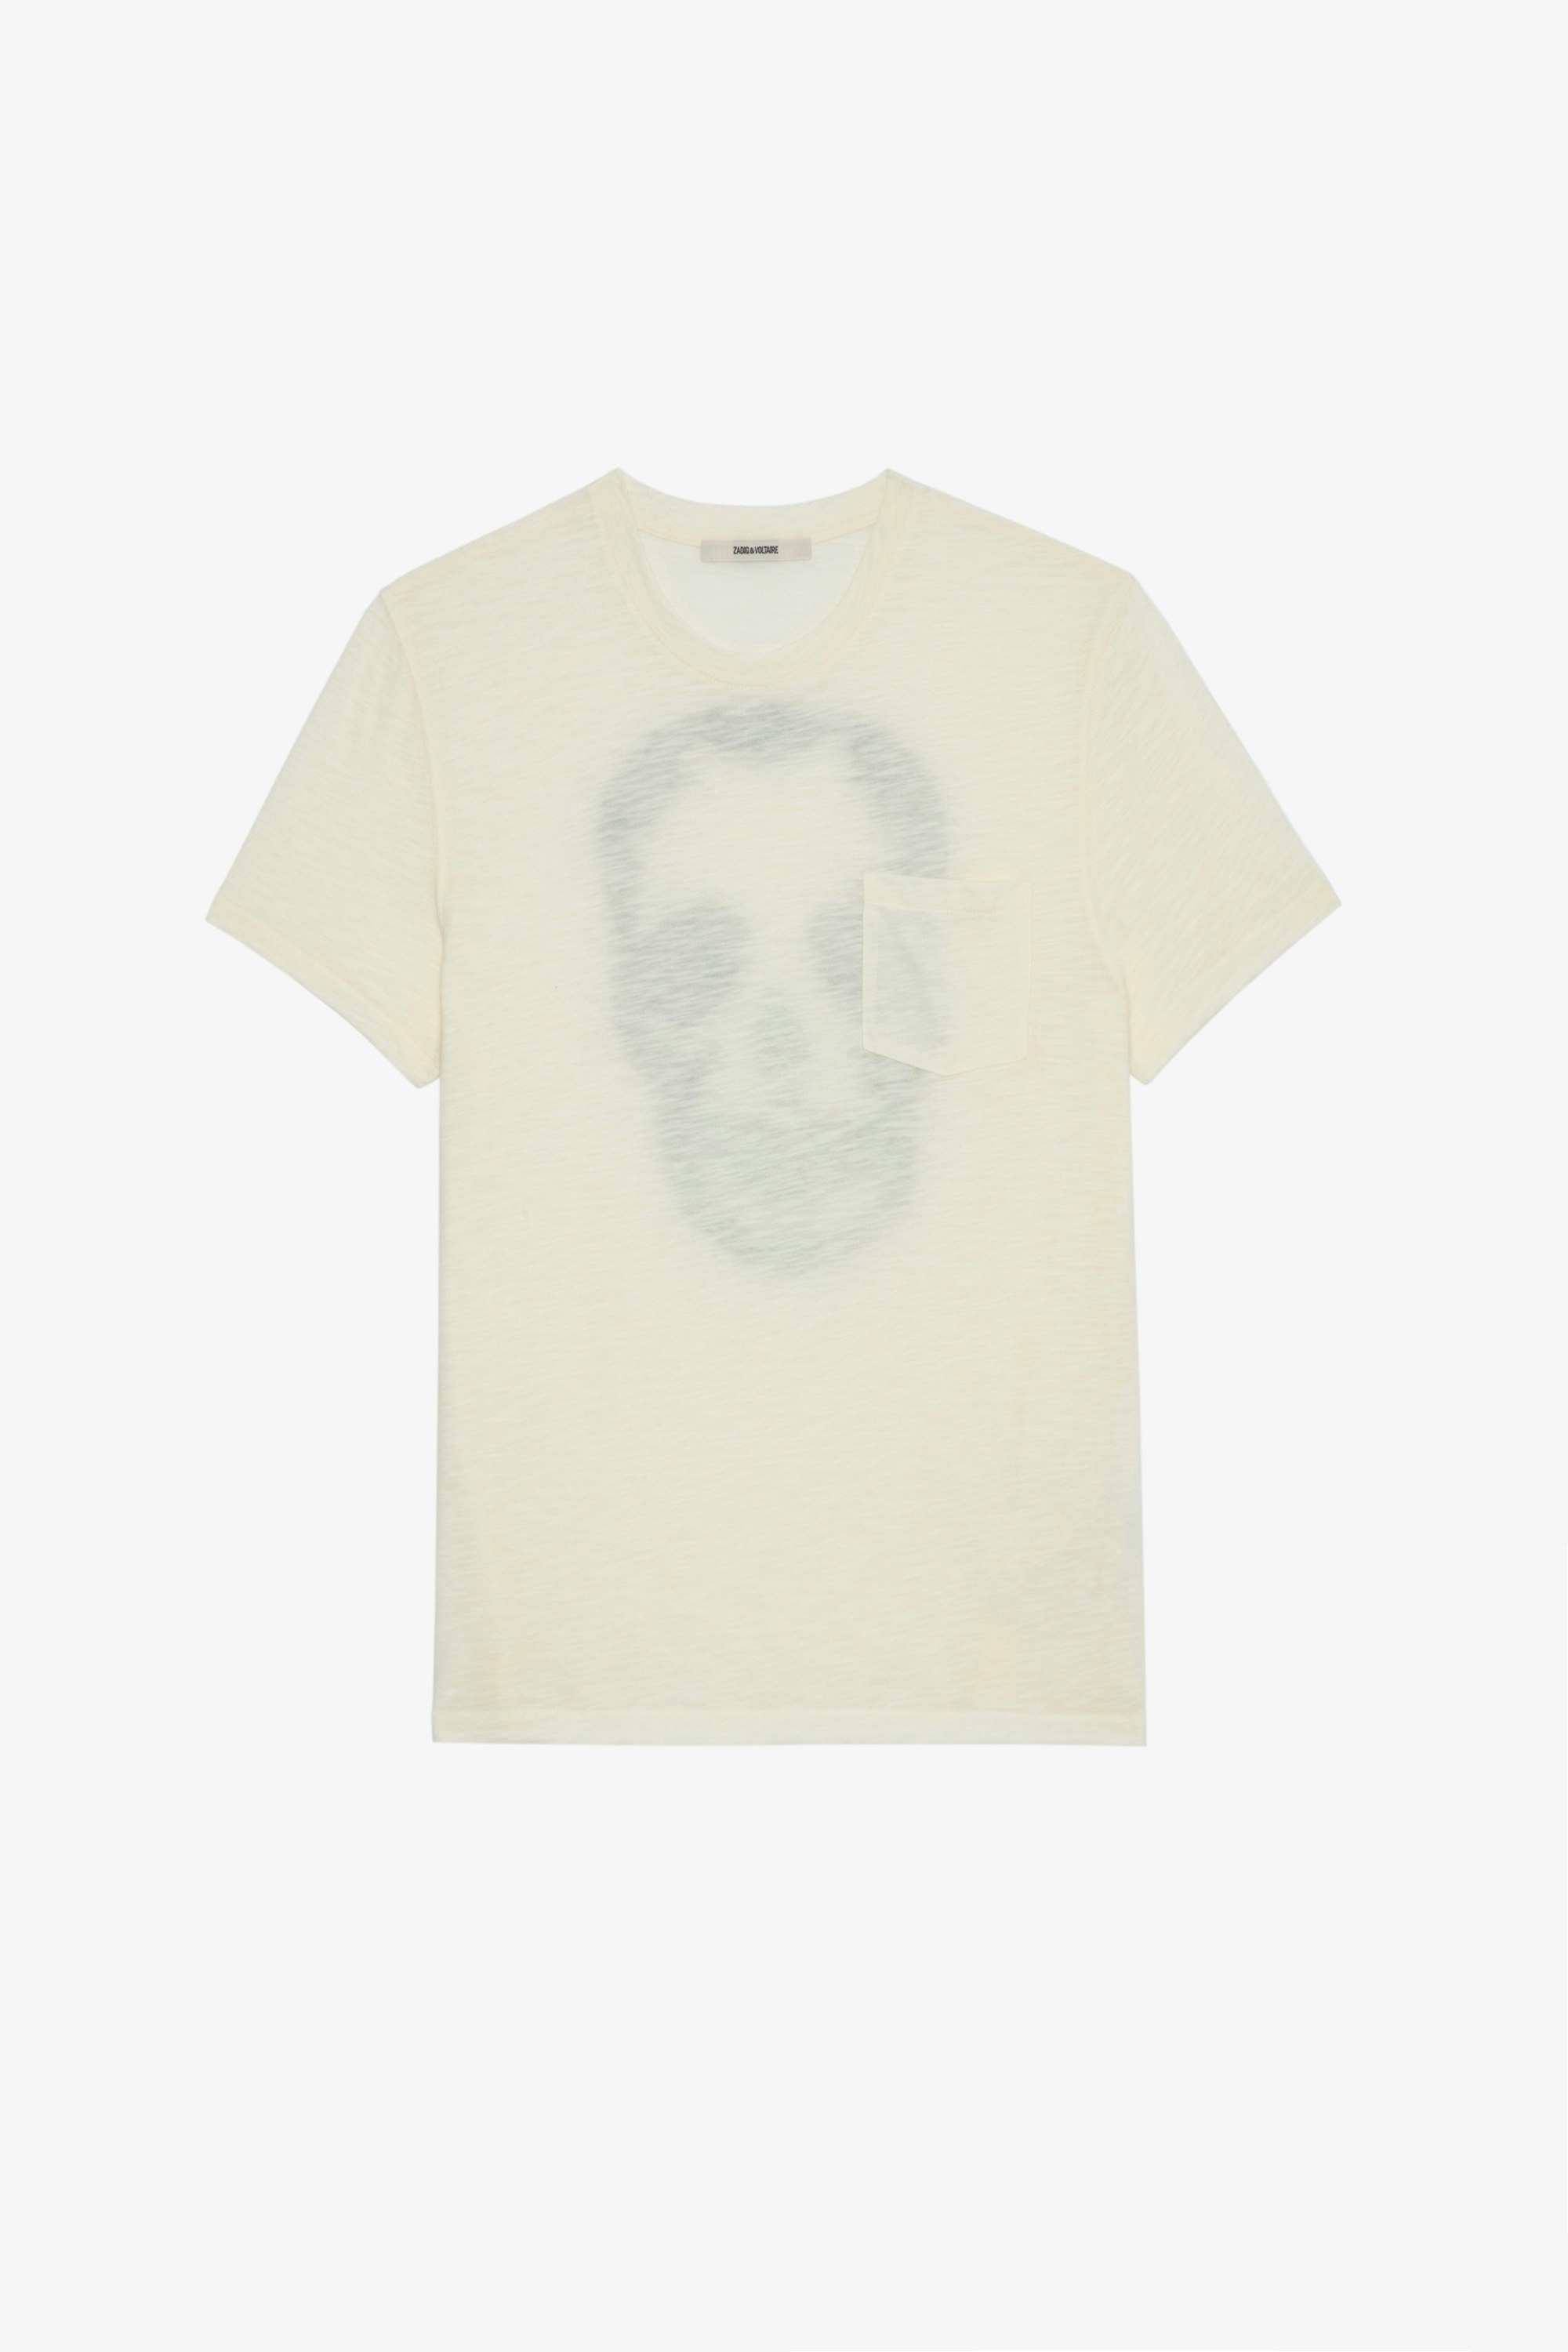 T-shirt Stockholm fiammato T-shirt in cotone fiammato écru decorata con skull sul retro, da uomo